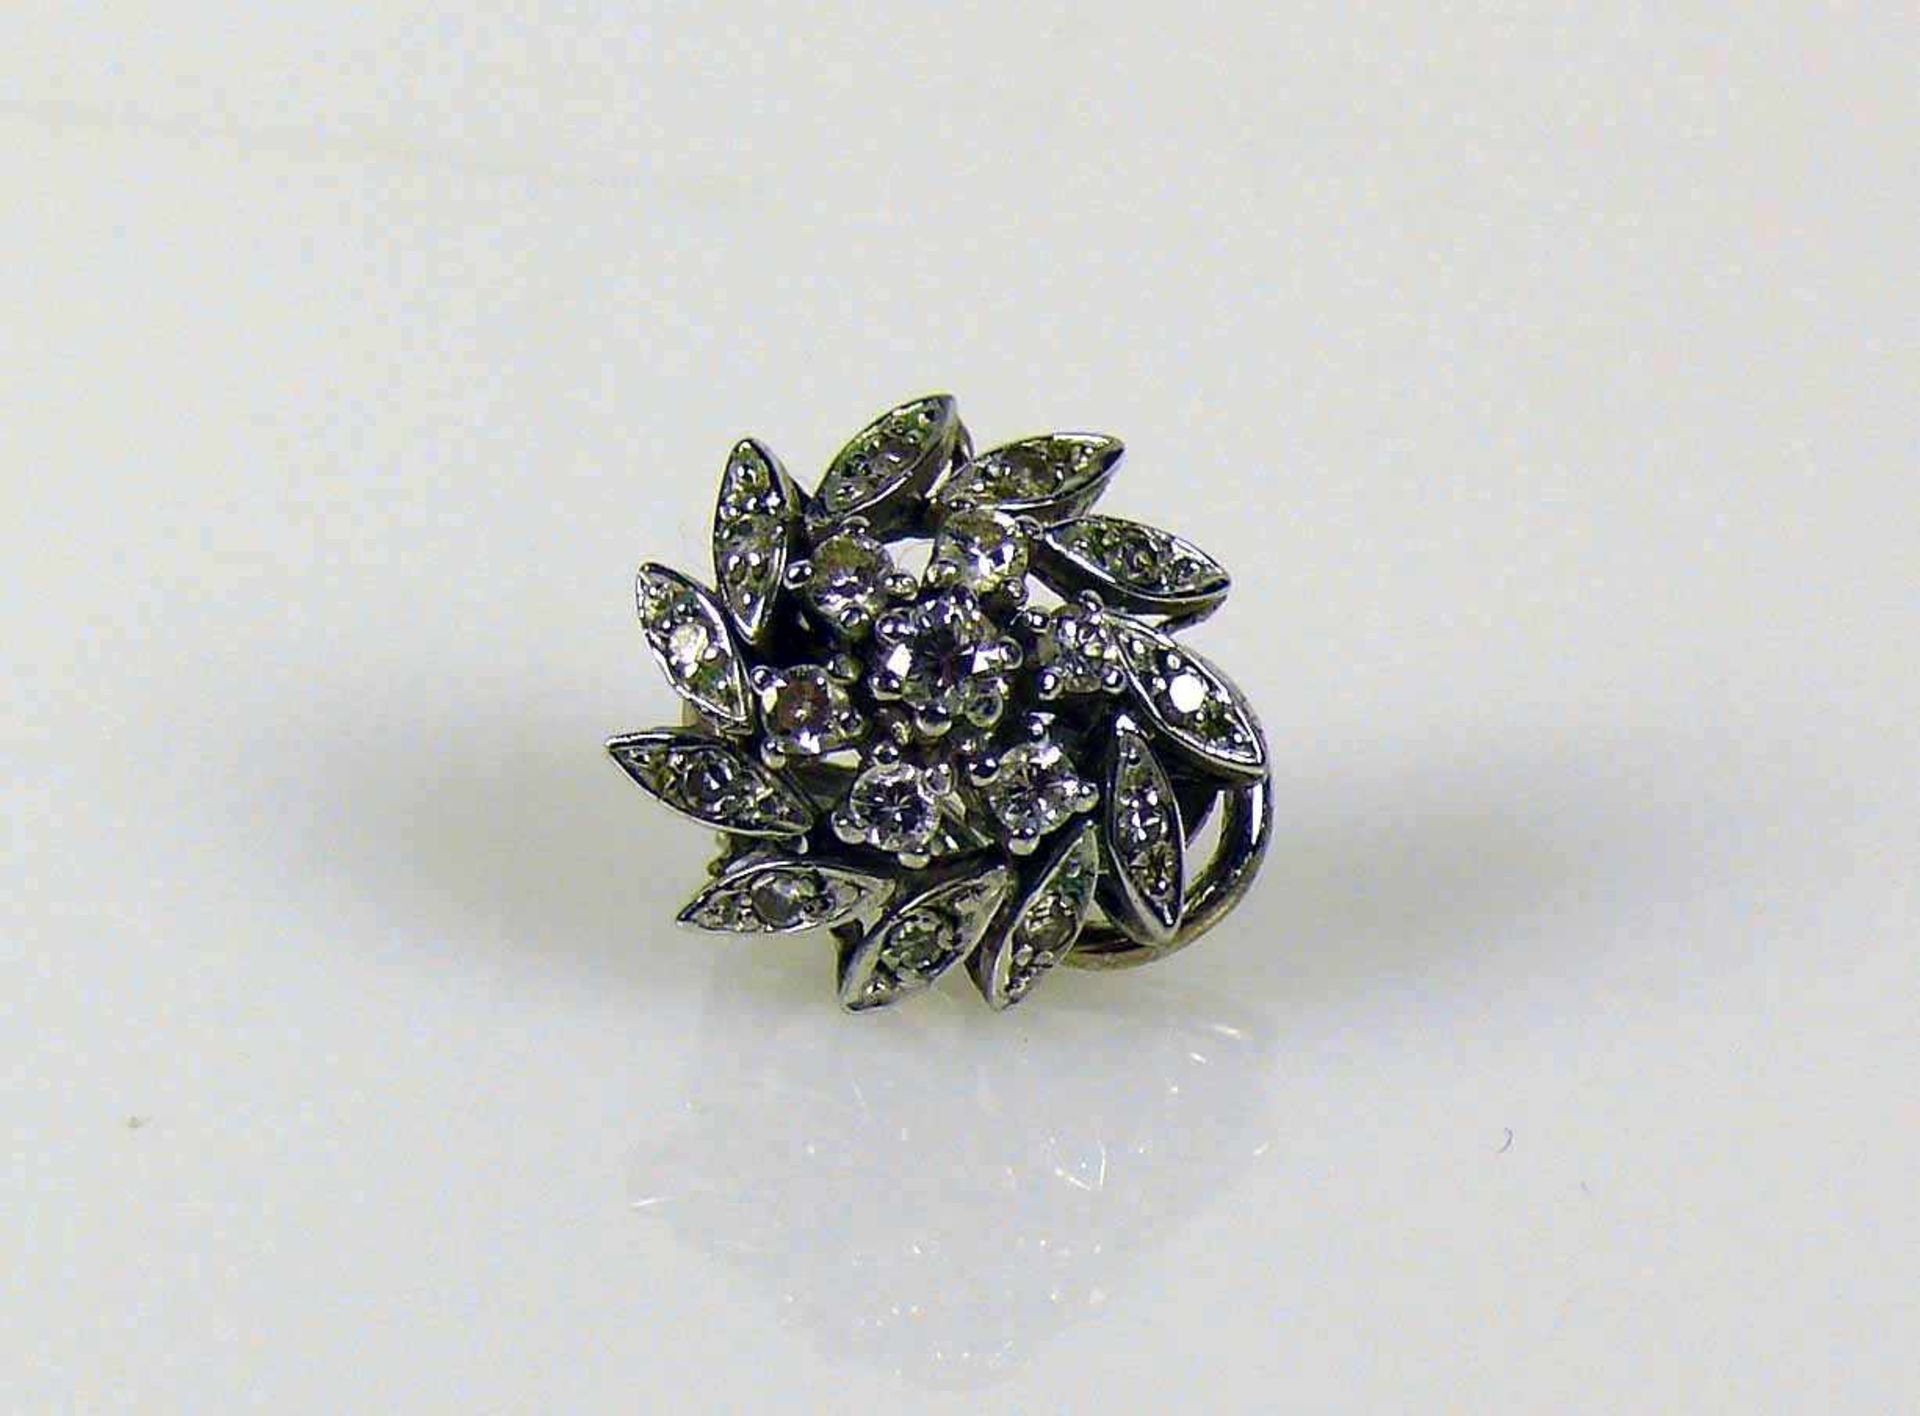 Ohrclip 14ct WG; blütenförmiger Dekor besetzt mit 7 Diamanten von zus. ca. 0,20ct; 3,5g